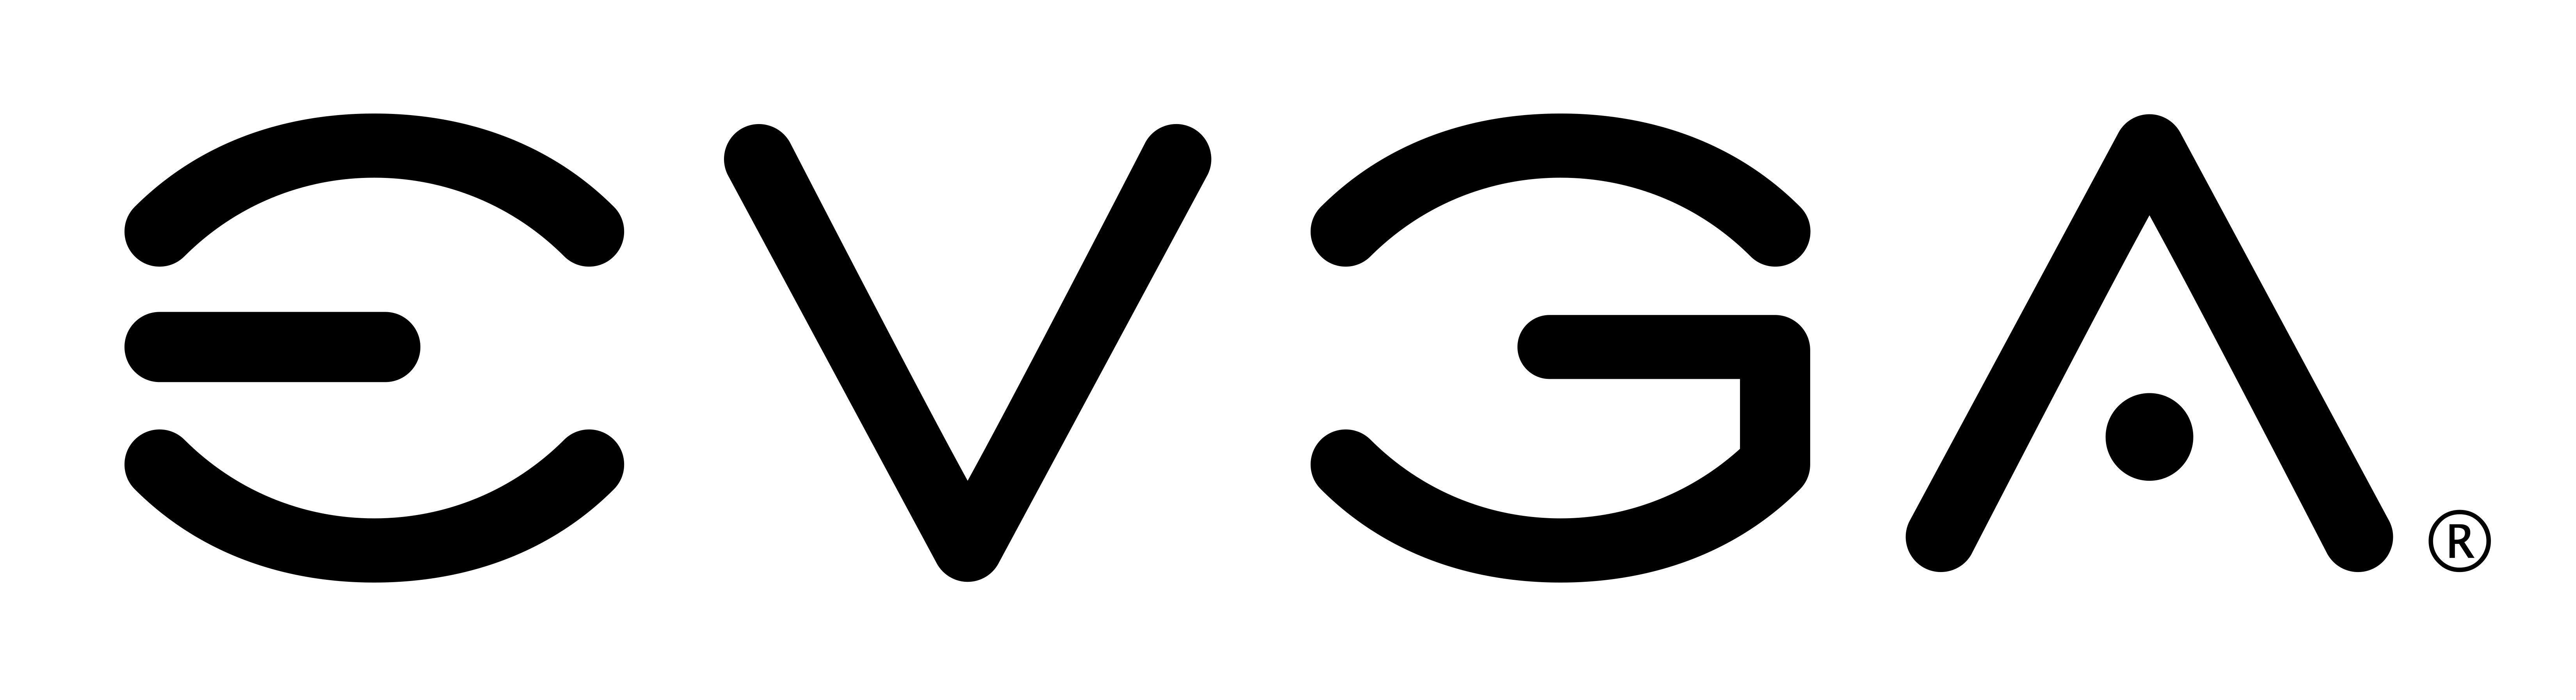 EVGA Logo - EVGA